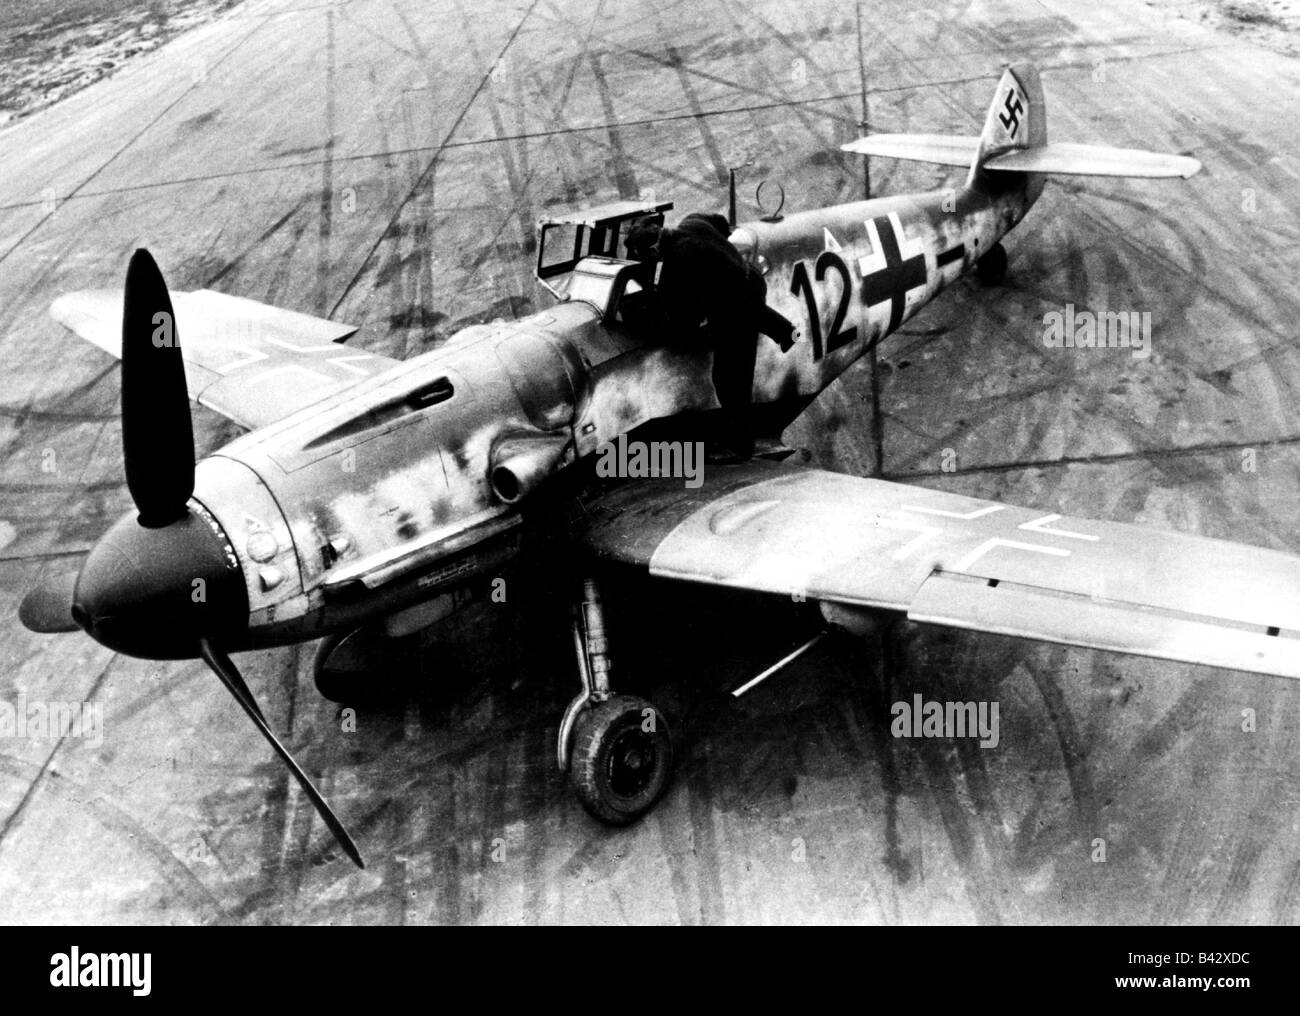 Événements, seconde Guerre mondiale / seconde Guerre mondiale, guerre aérienne, avions, avions de chasse allemands Messerschmitt Bf 109 G sur la piste, été 1943, Banque D'Images